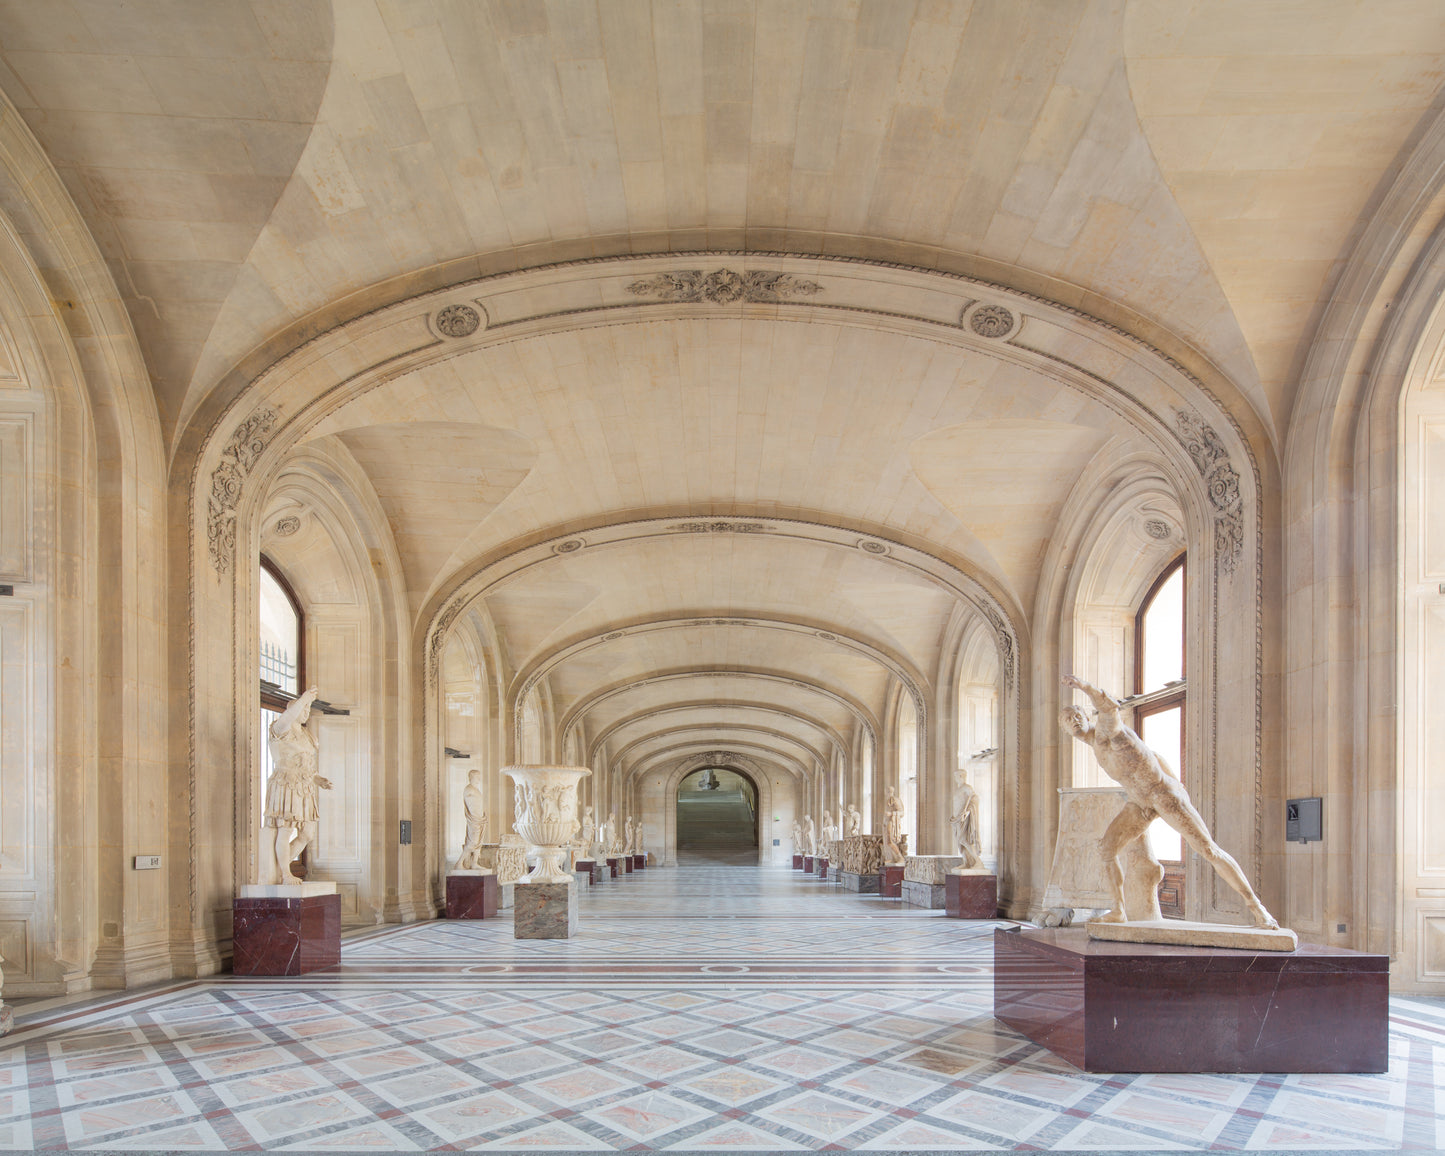 The Louvre Galerie Daru I